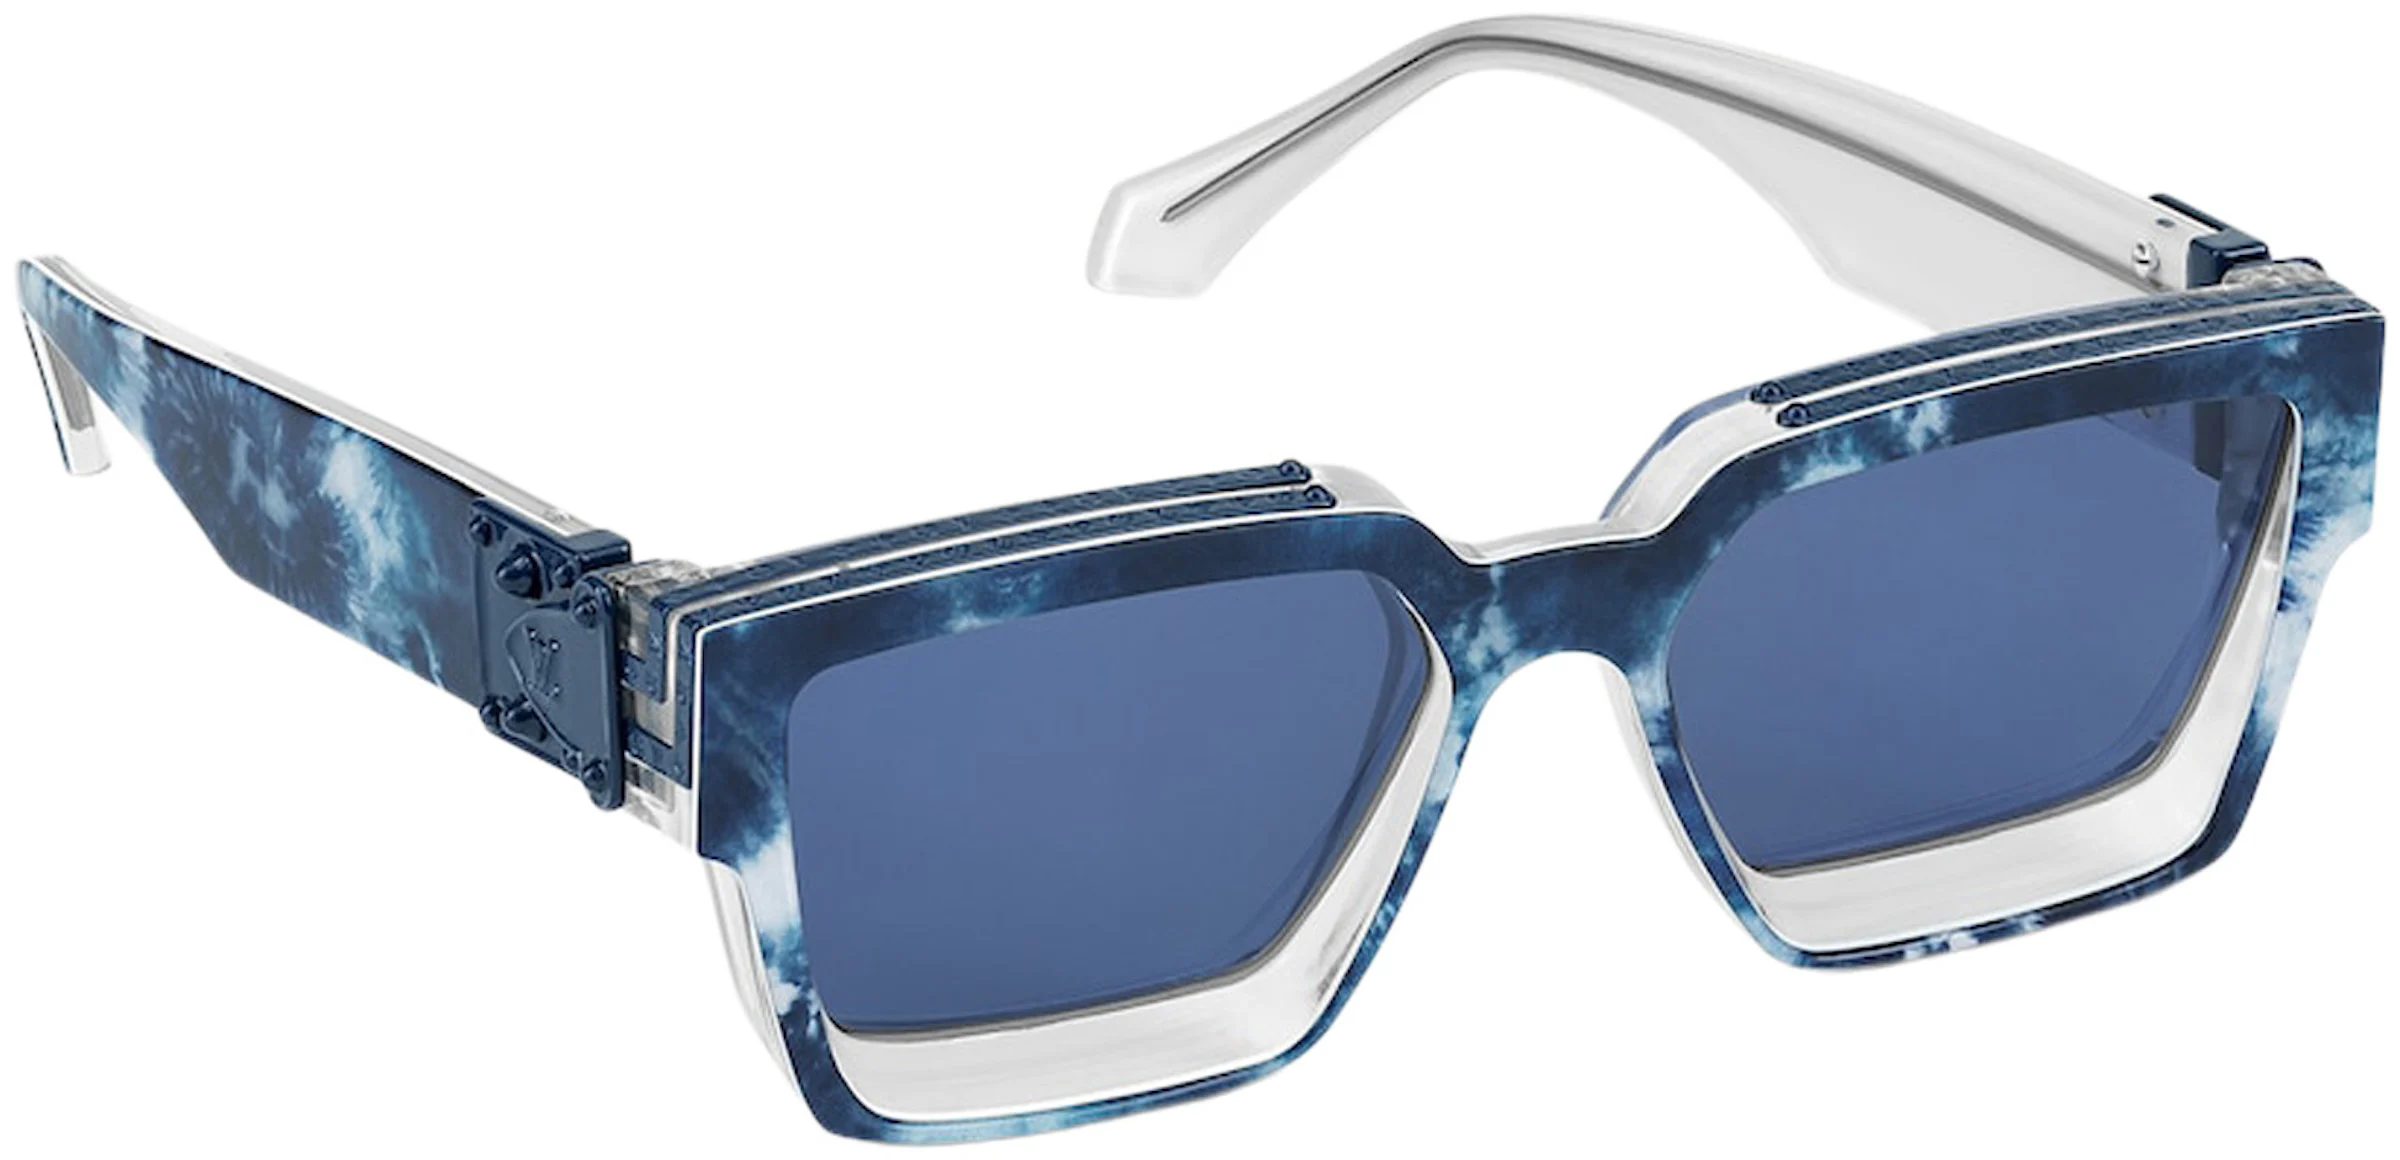 Louis Vuitton Sunglasses 1.1 Millionaires Monogram Bandana Bleached ...